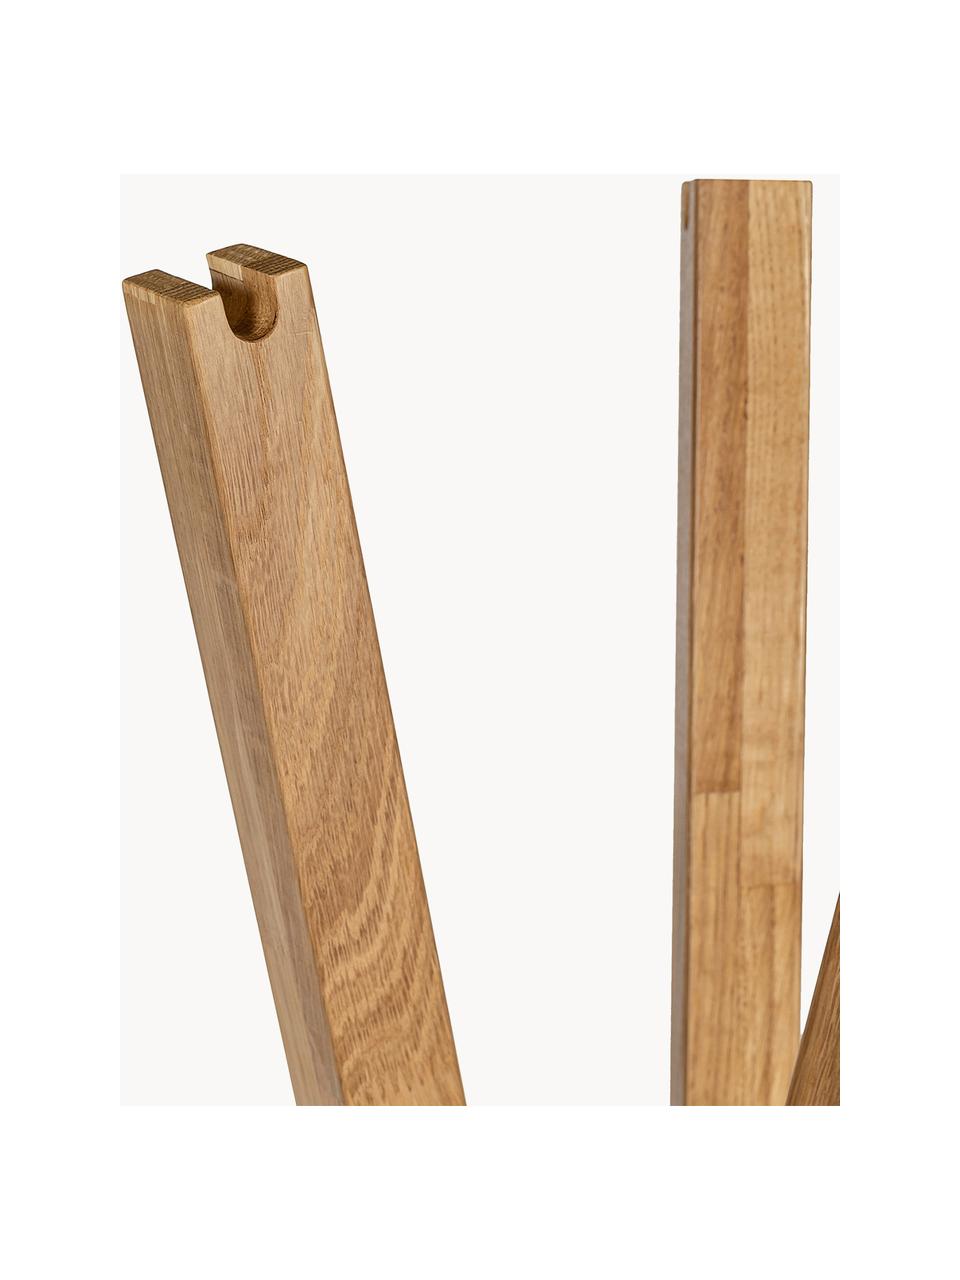 Kapstok Clift van eikenhout, Massief eikenhout

Dit product is gemaakt van duurzaam geproduceerd, FSC®-gecertificeerd hout., Eikenhout, H 175 cm